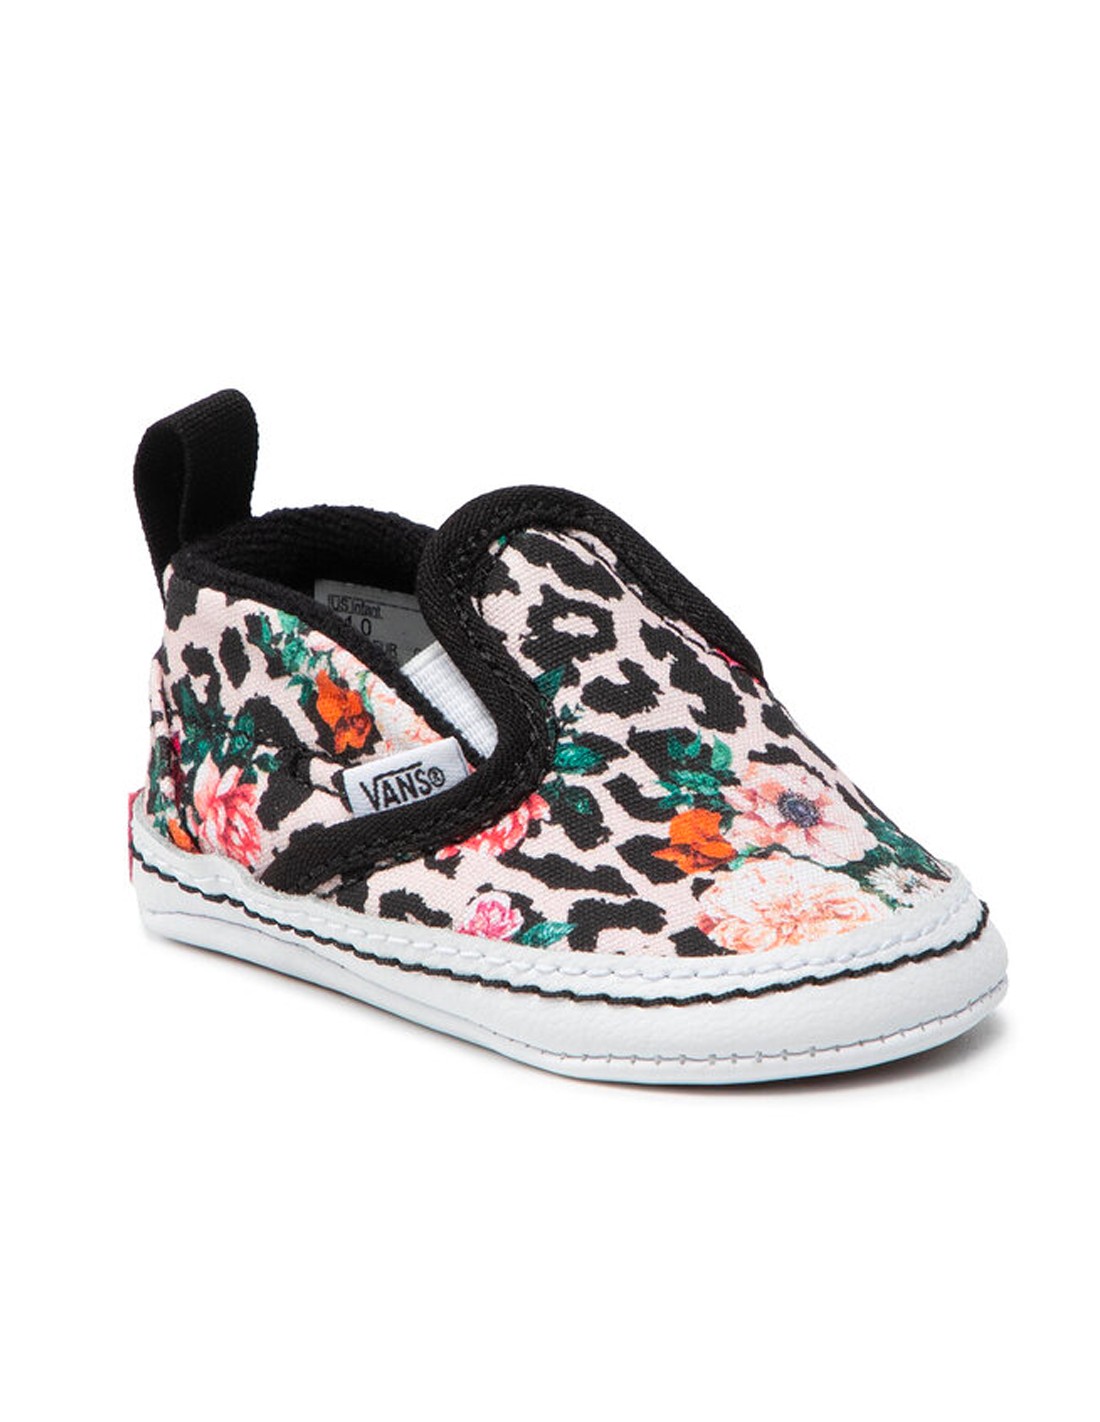 VANS Slip-On V Crib - Leopard Floral - Baby Shoes